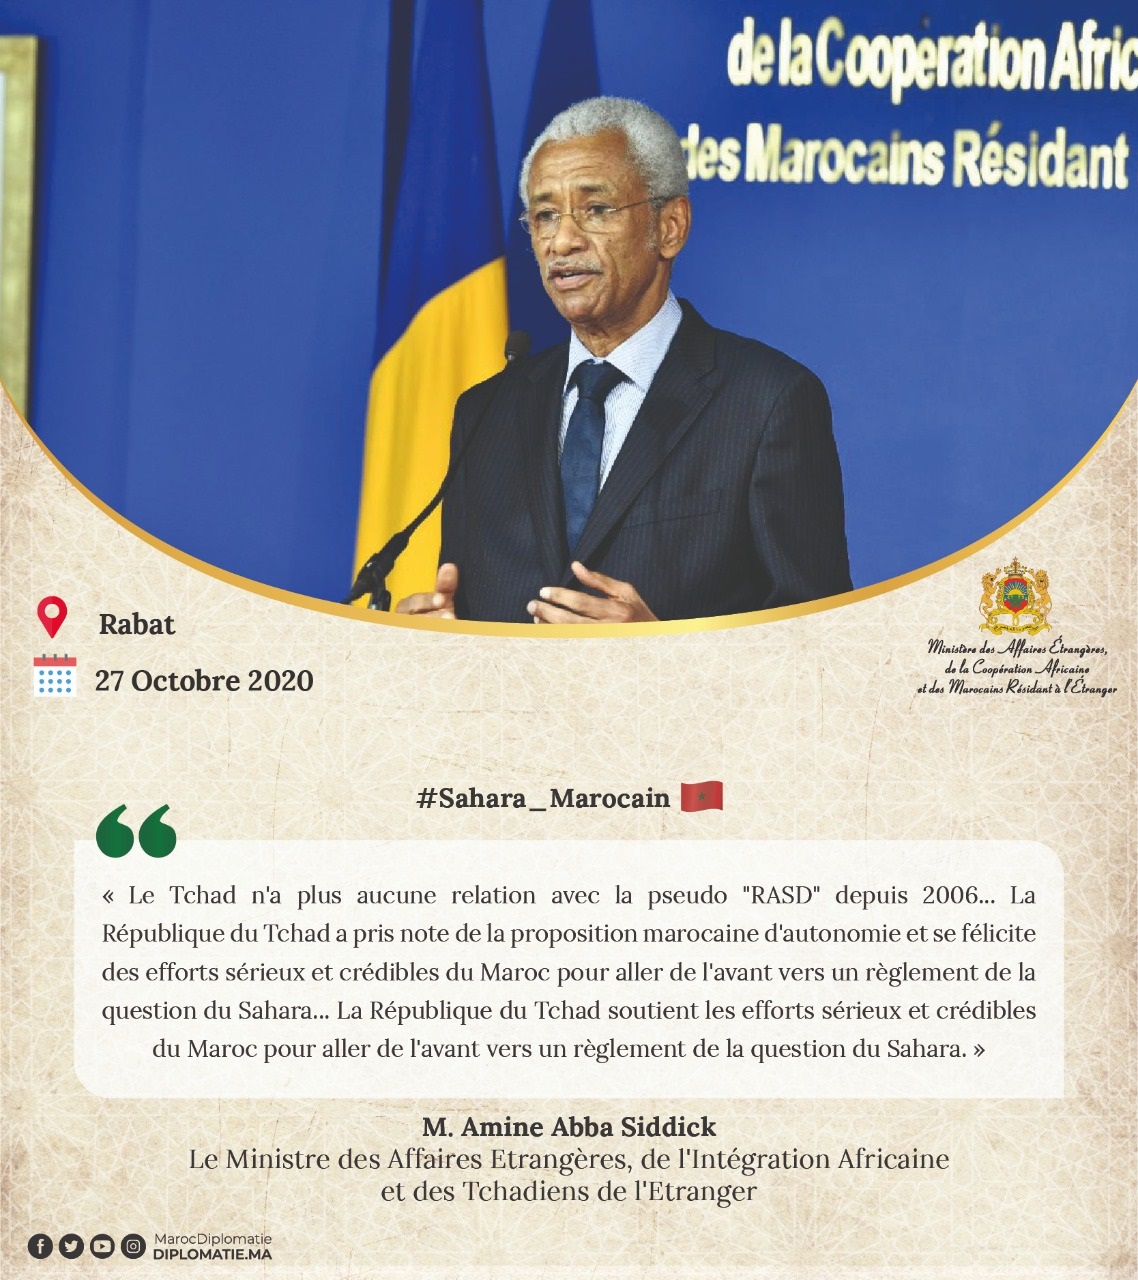 Déclaration de M. Amine Abba Siddick, Ministre des Affaires Etrangères, de l'Intégration Africaine et des Tchadiens de l'Etranger 